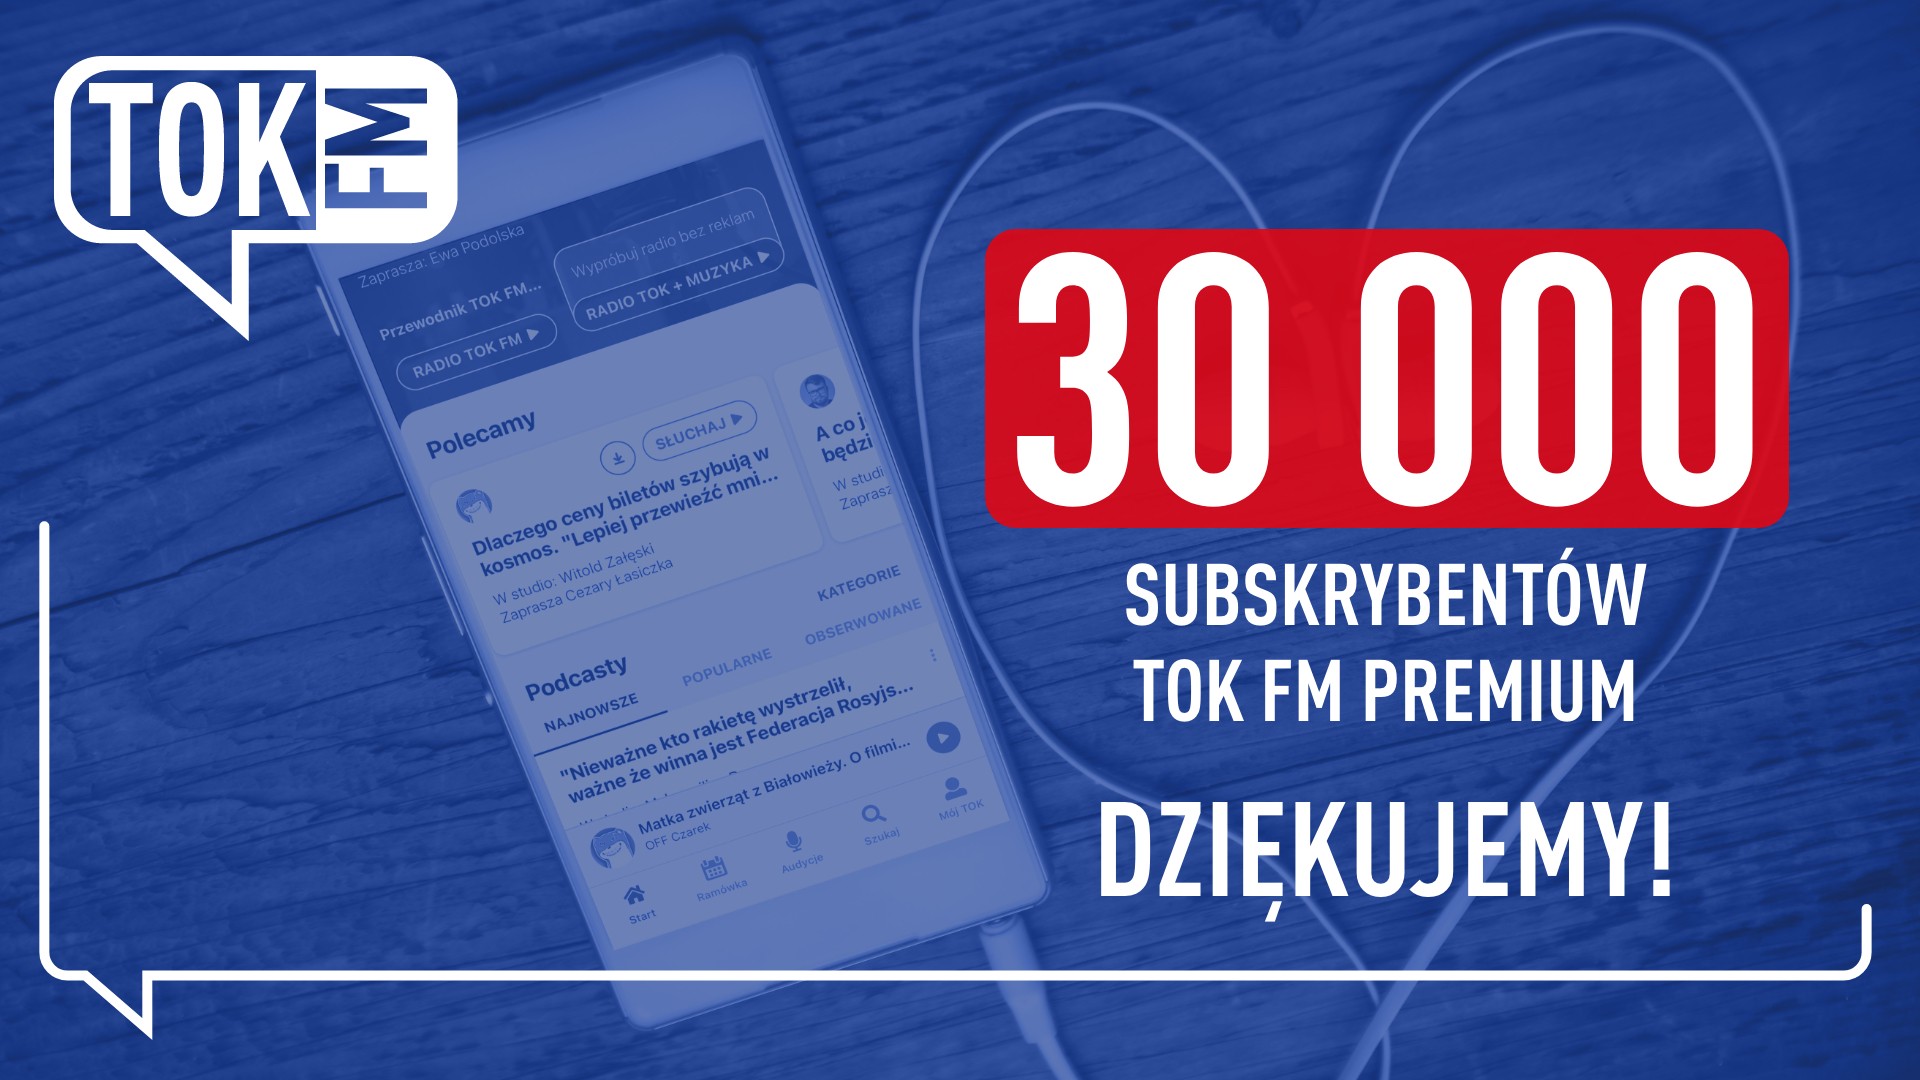 Oferta TOK FM Premium ma już ponad 30 tys. subskrybentów!